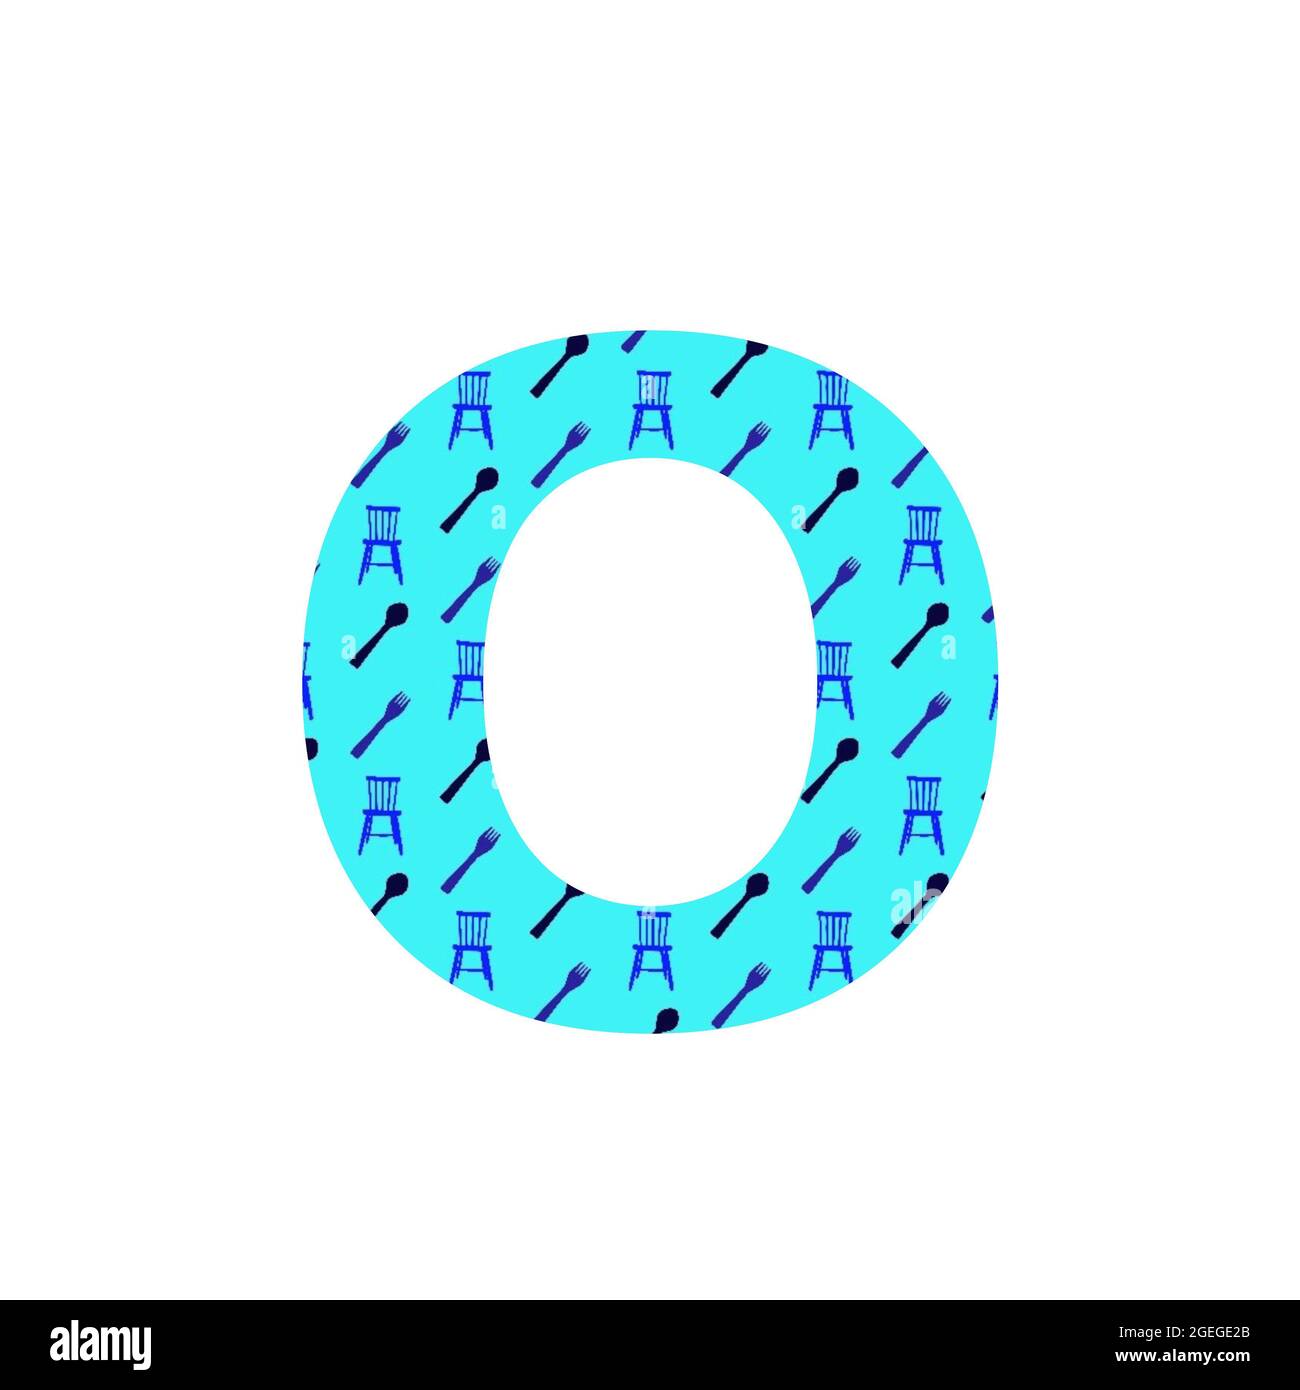 Lettera o dell'alfabeto, fatta con un modello di cucchiai, forchette e sedie da cucina, con sfondo blu, isolata su sfondo bianco Foto Stock